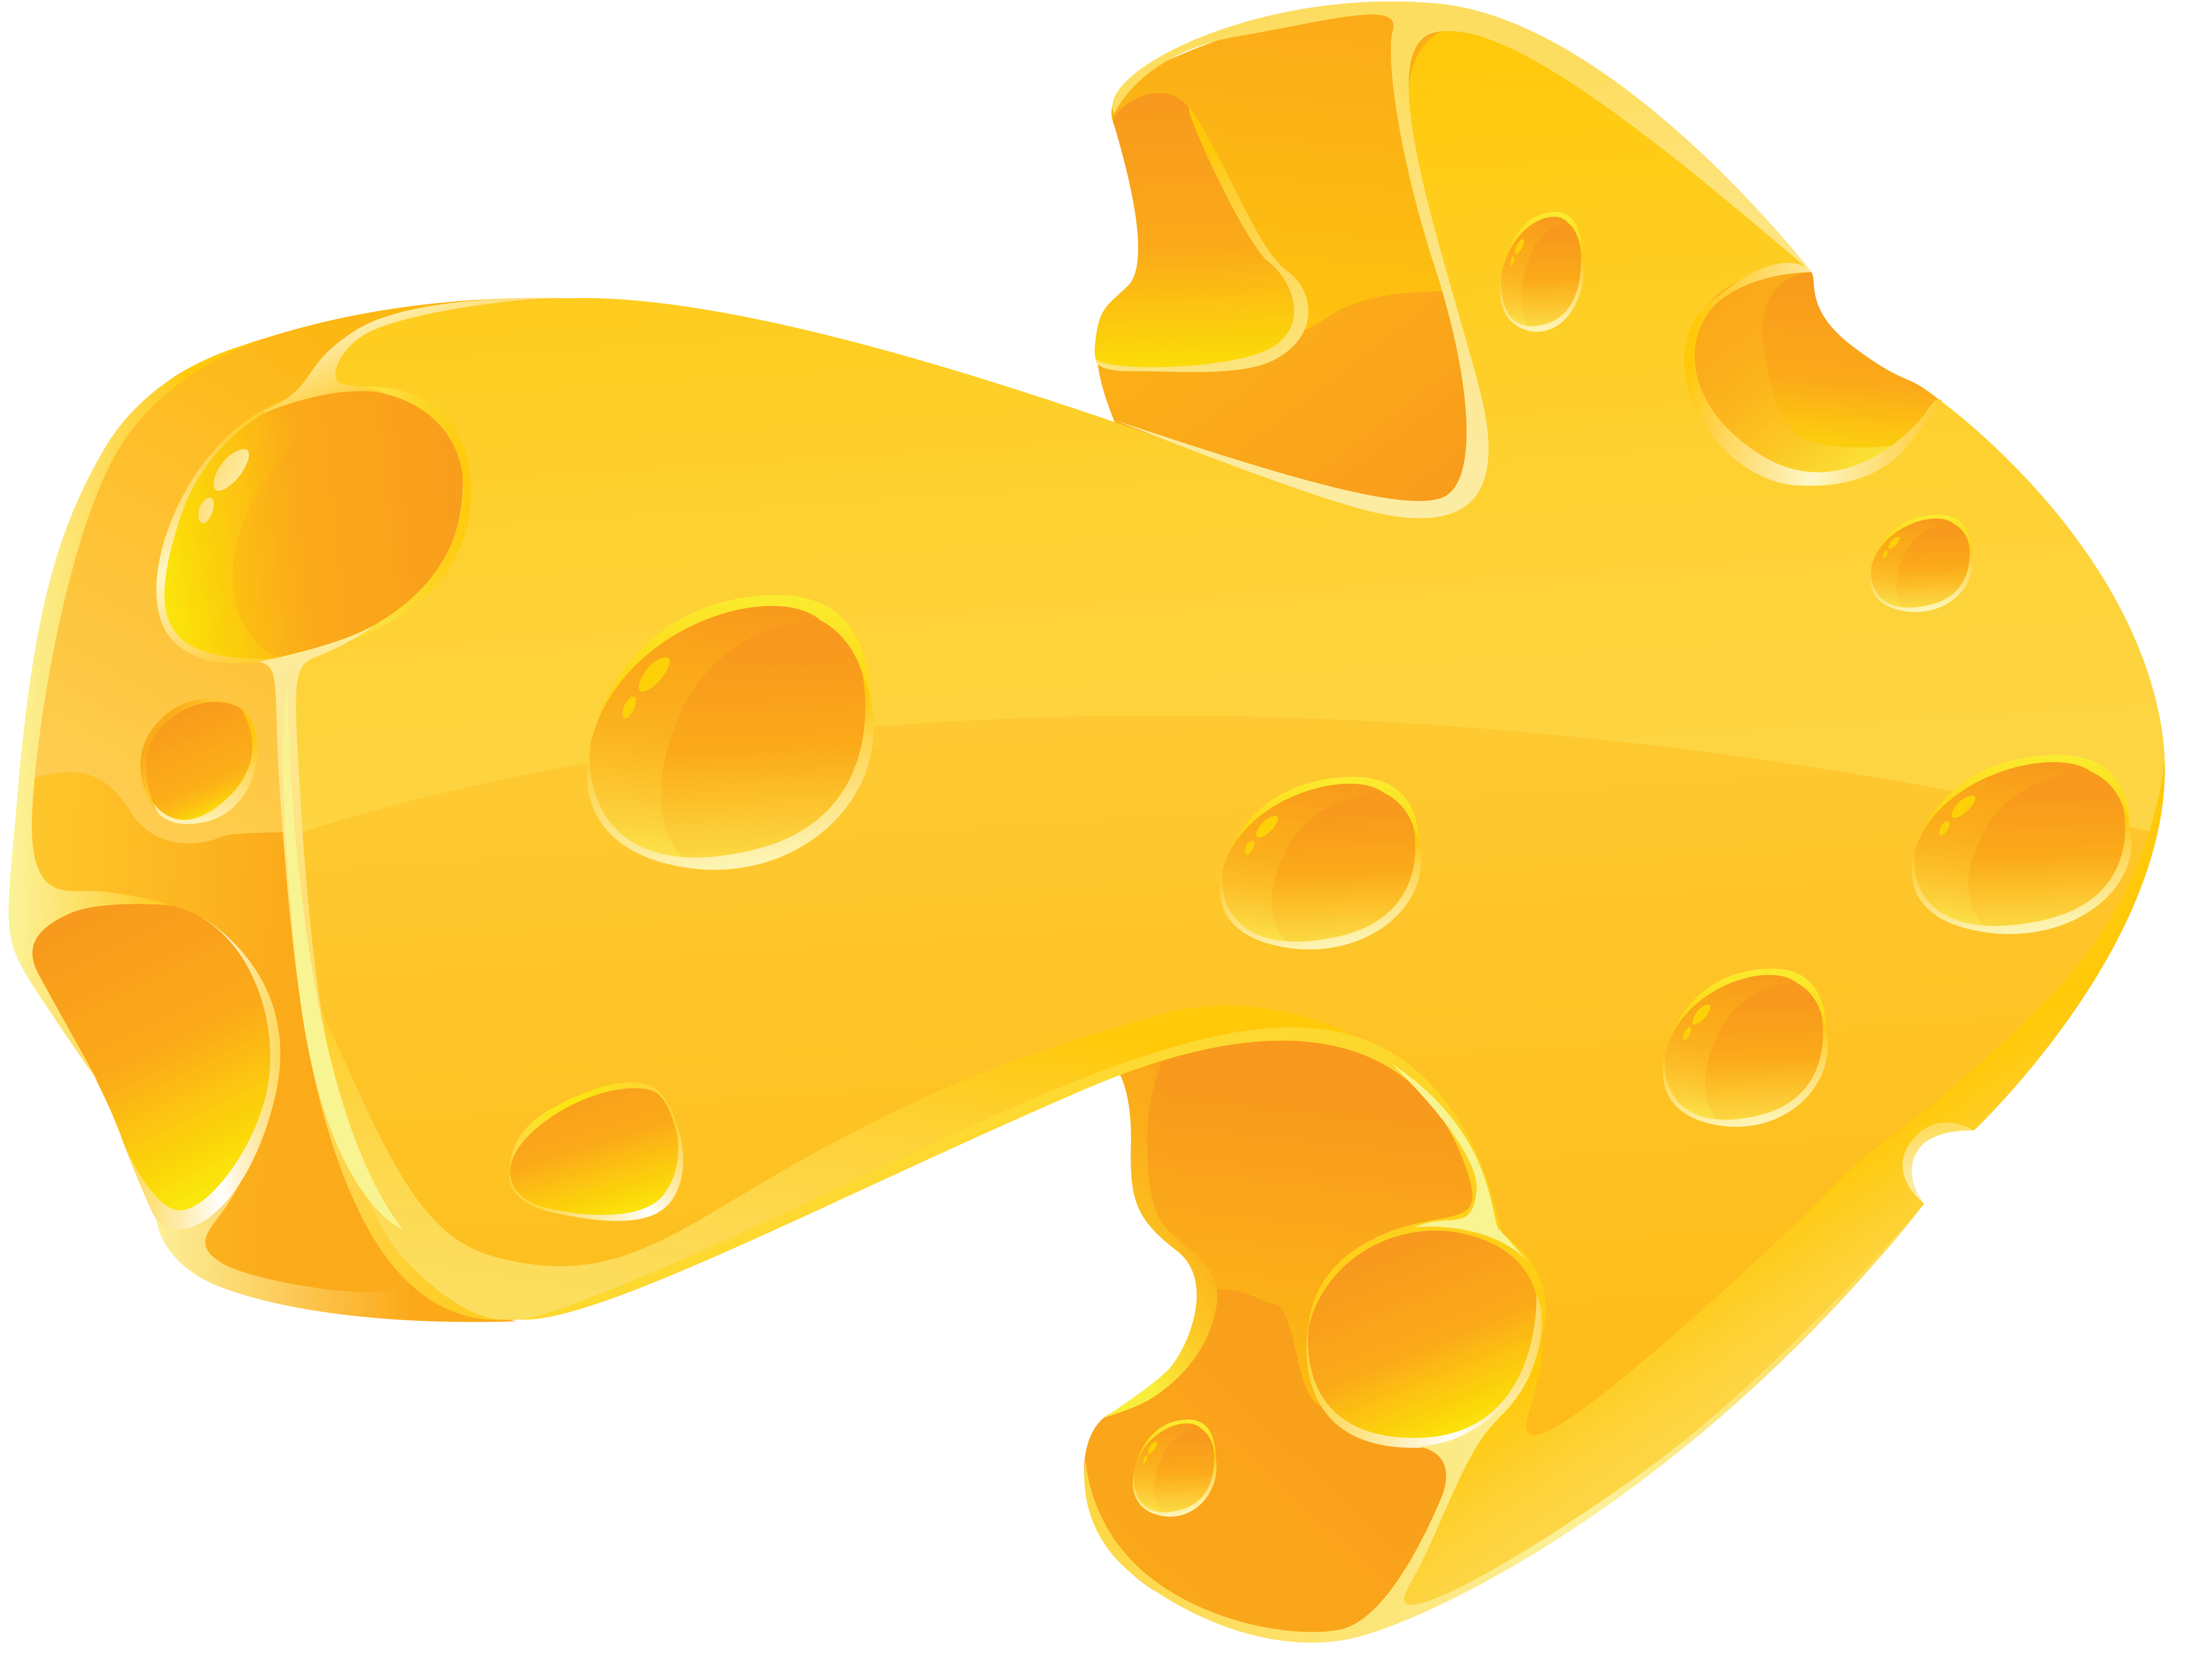 Il formaggio